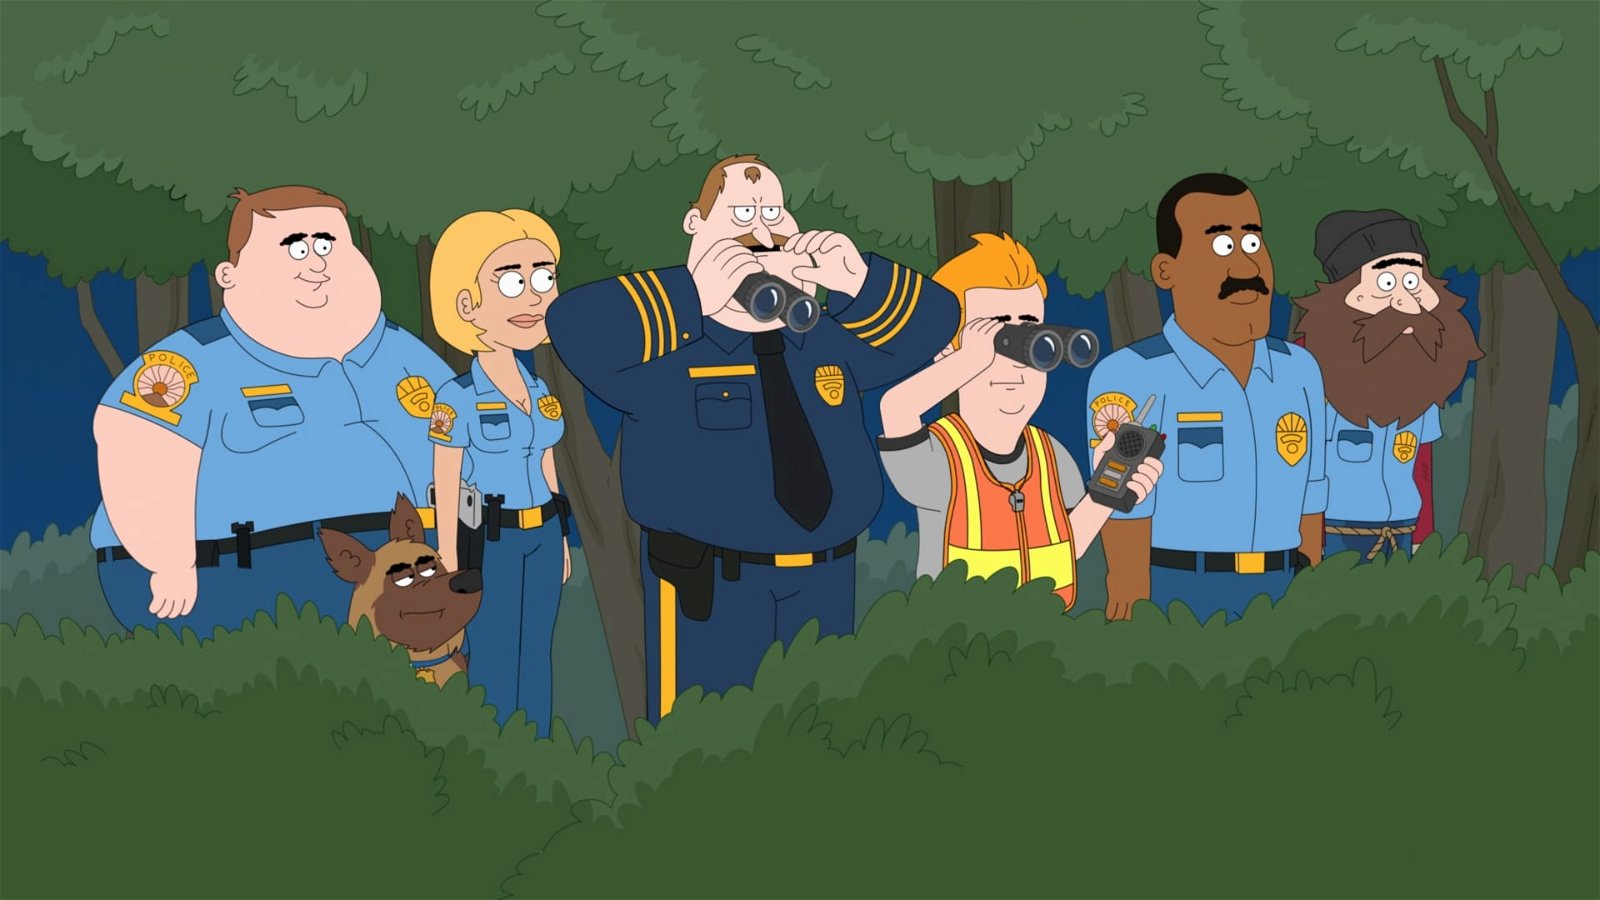 Netflix rasistiska översättning i tecknad serie – använder "N-ordet"